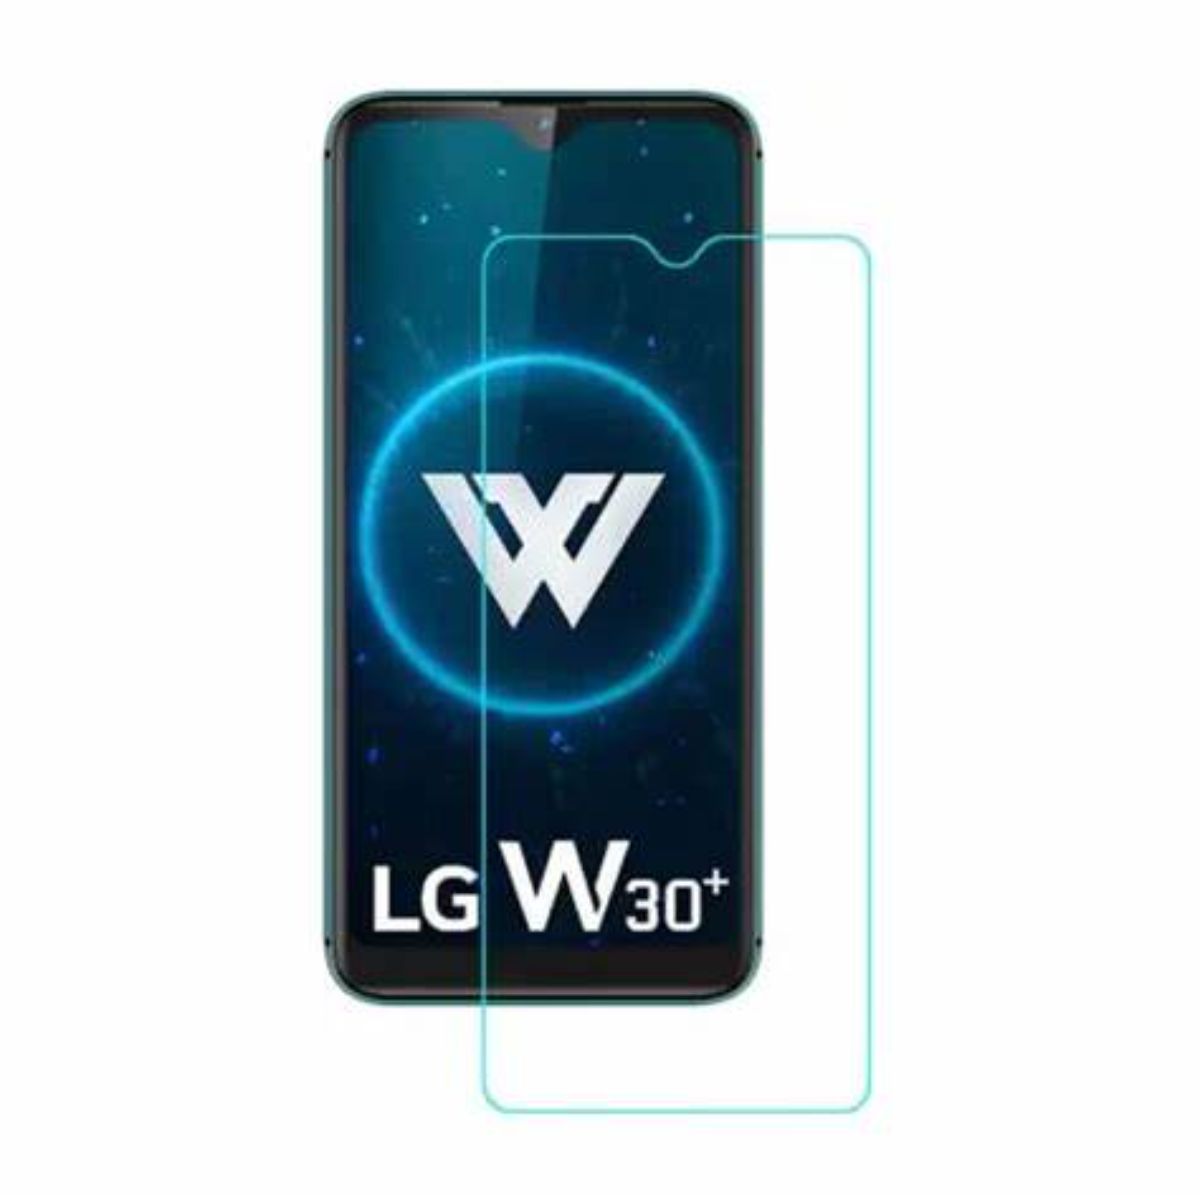 LG W30 PLUS.jfif  1